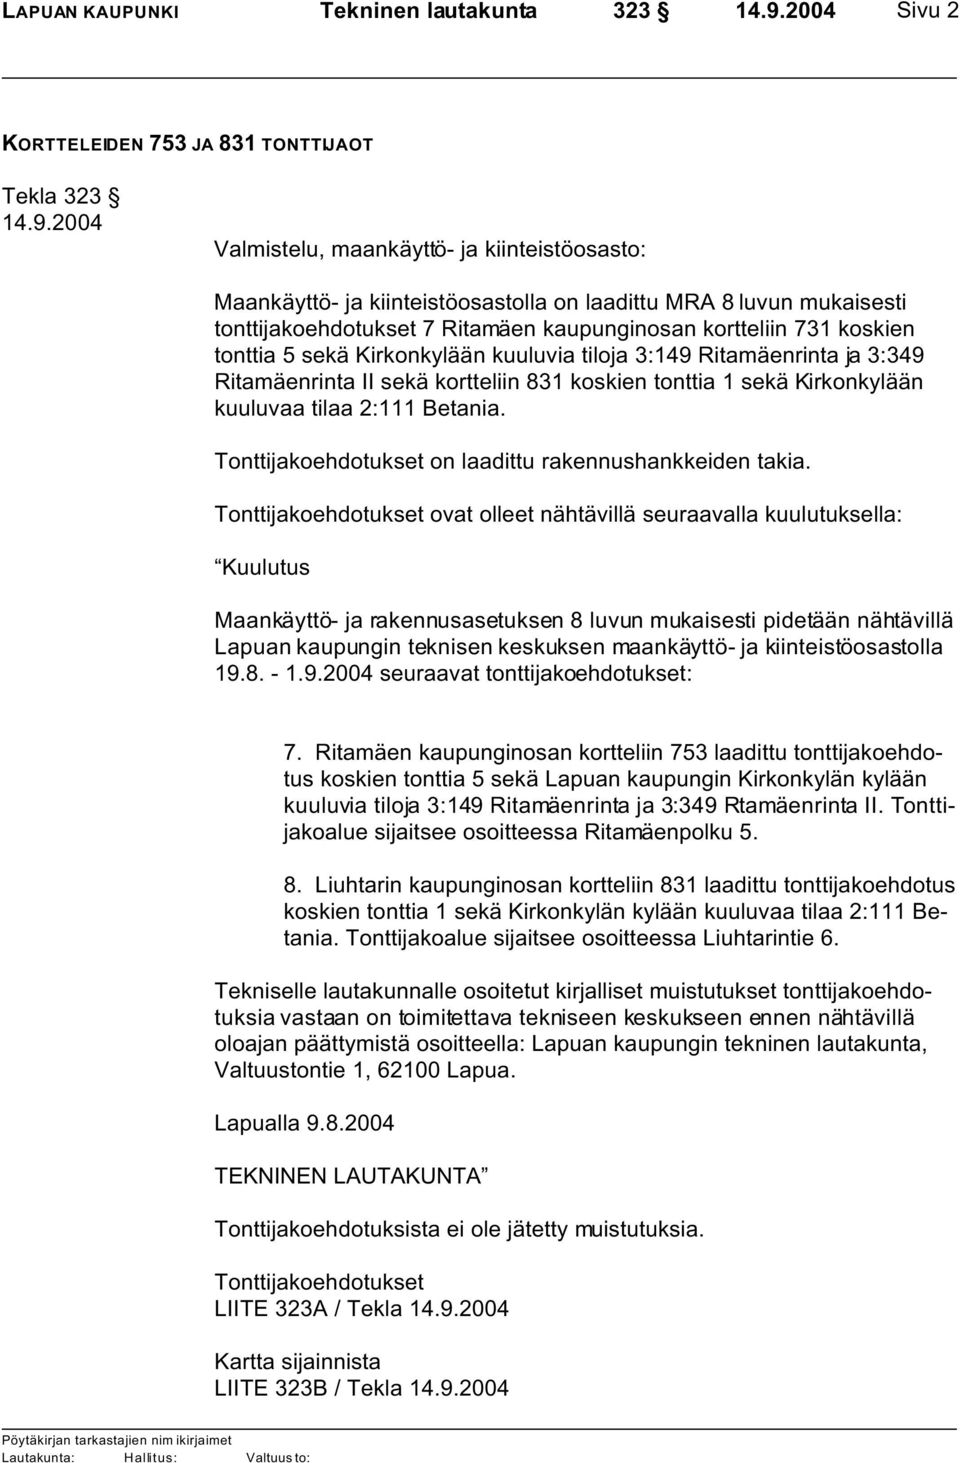 2004 Valmistelu, maankäyttö- ja kiinteistöosasto: Maankäyttö- ja kiinteistöosastolla on laadittu MRA 8 luvun mukaisesti tonttijakoehdotukset 7 Ritamäen kaupunginosan kortteliin 731 koskien tonttia 5